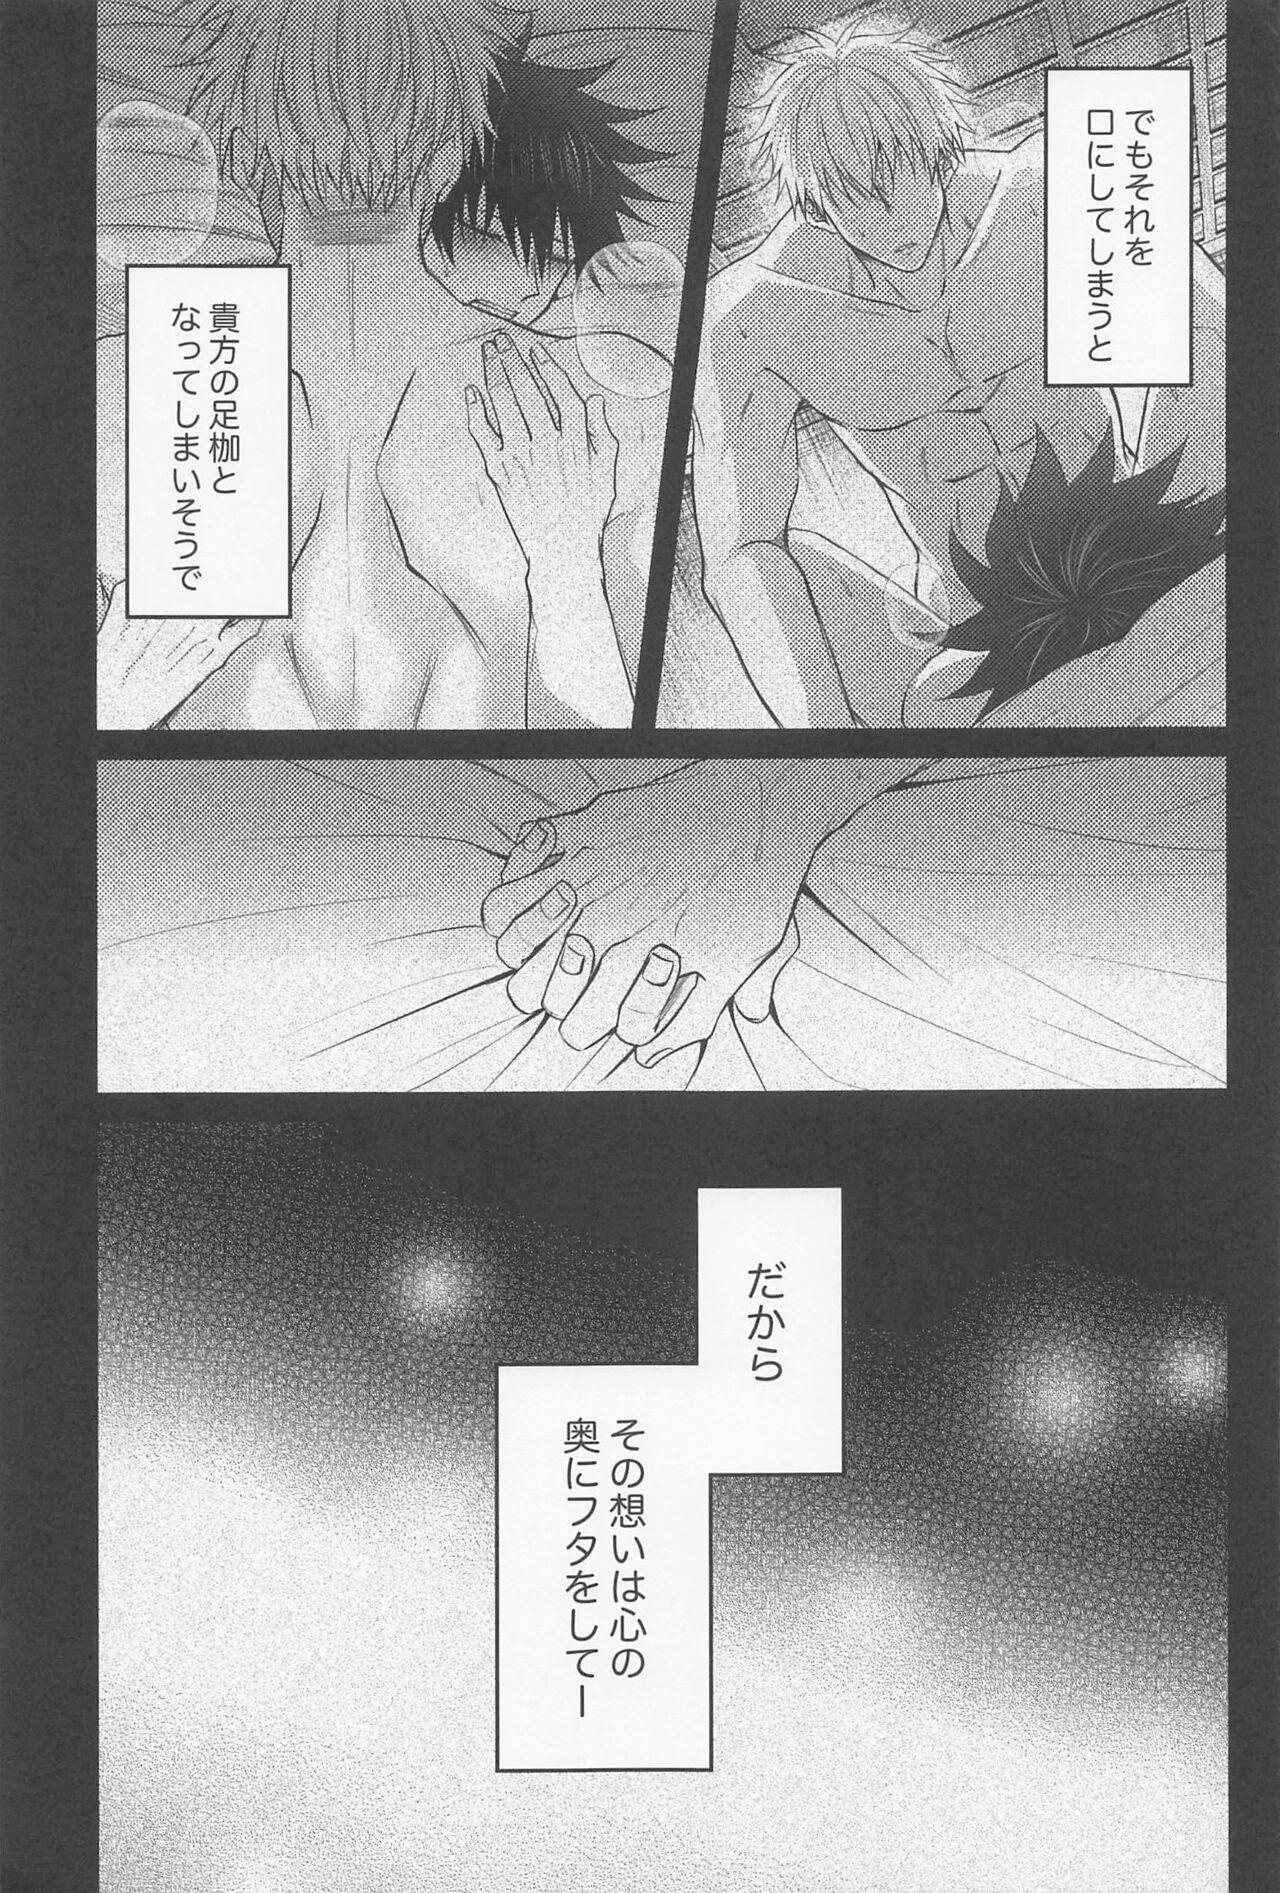 Italiana Sabishii Yoru wa Anata o Omou - Jujutsu kaisen Punished - Page 10